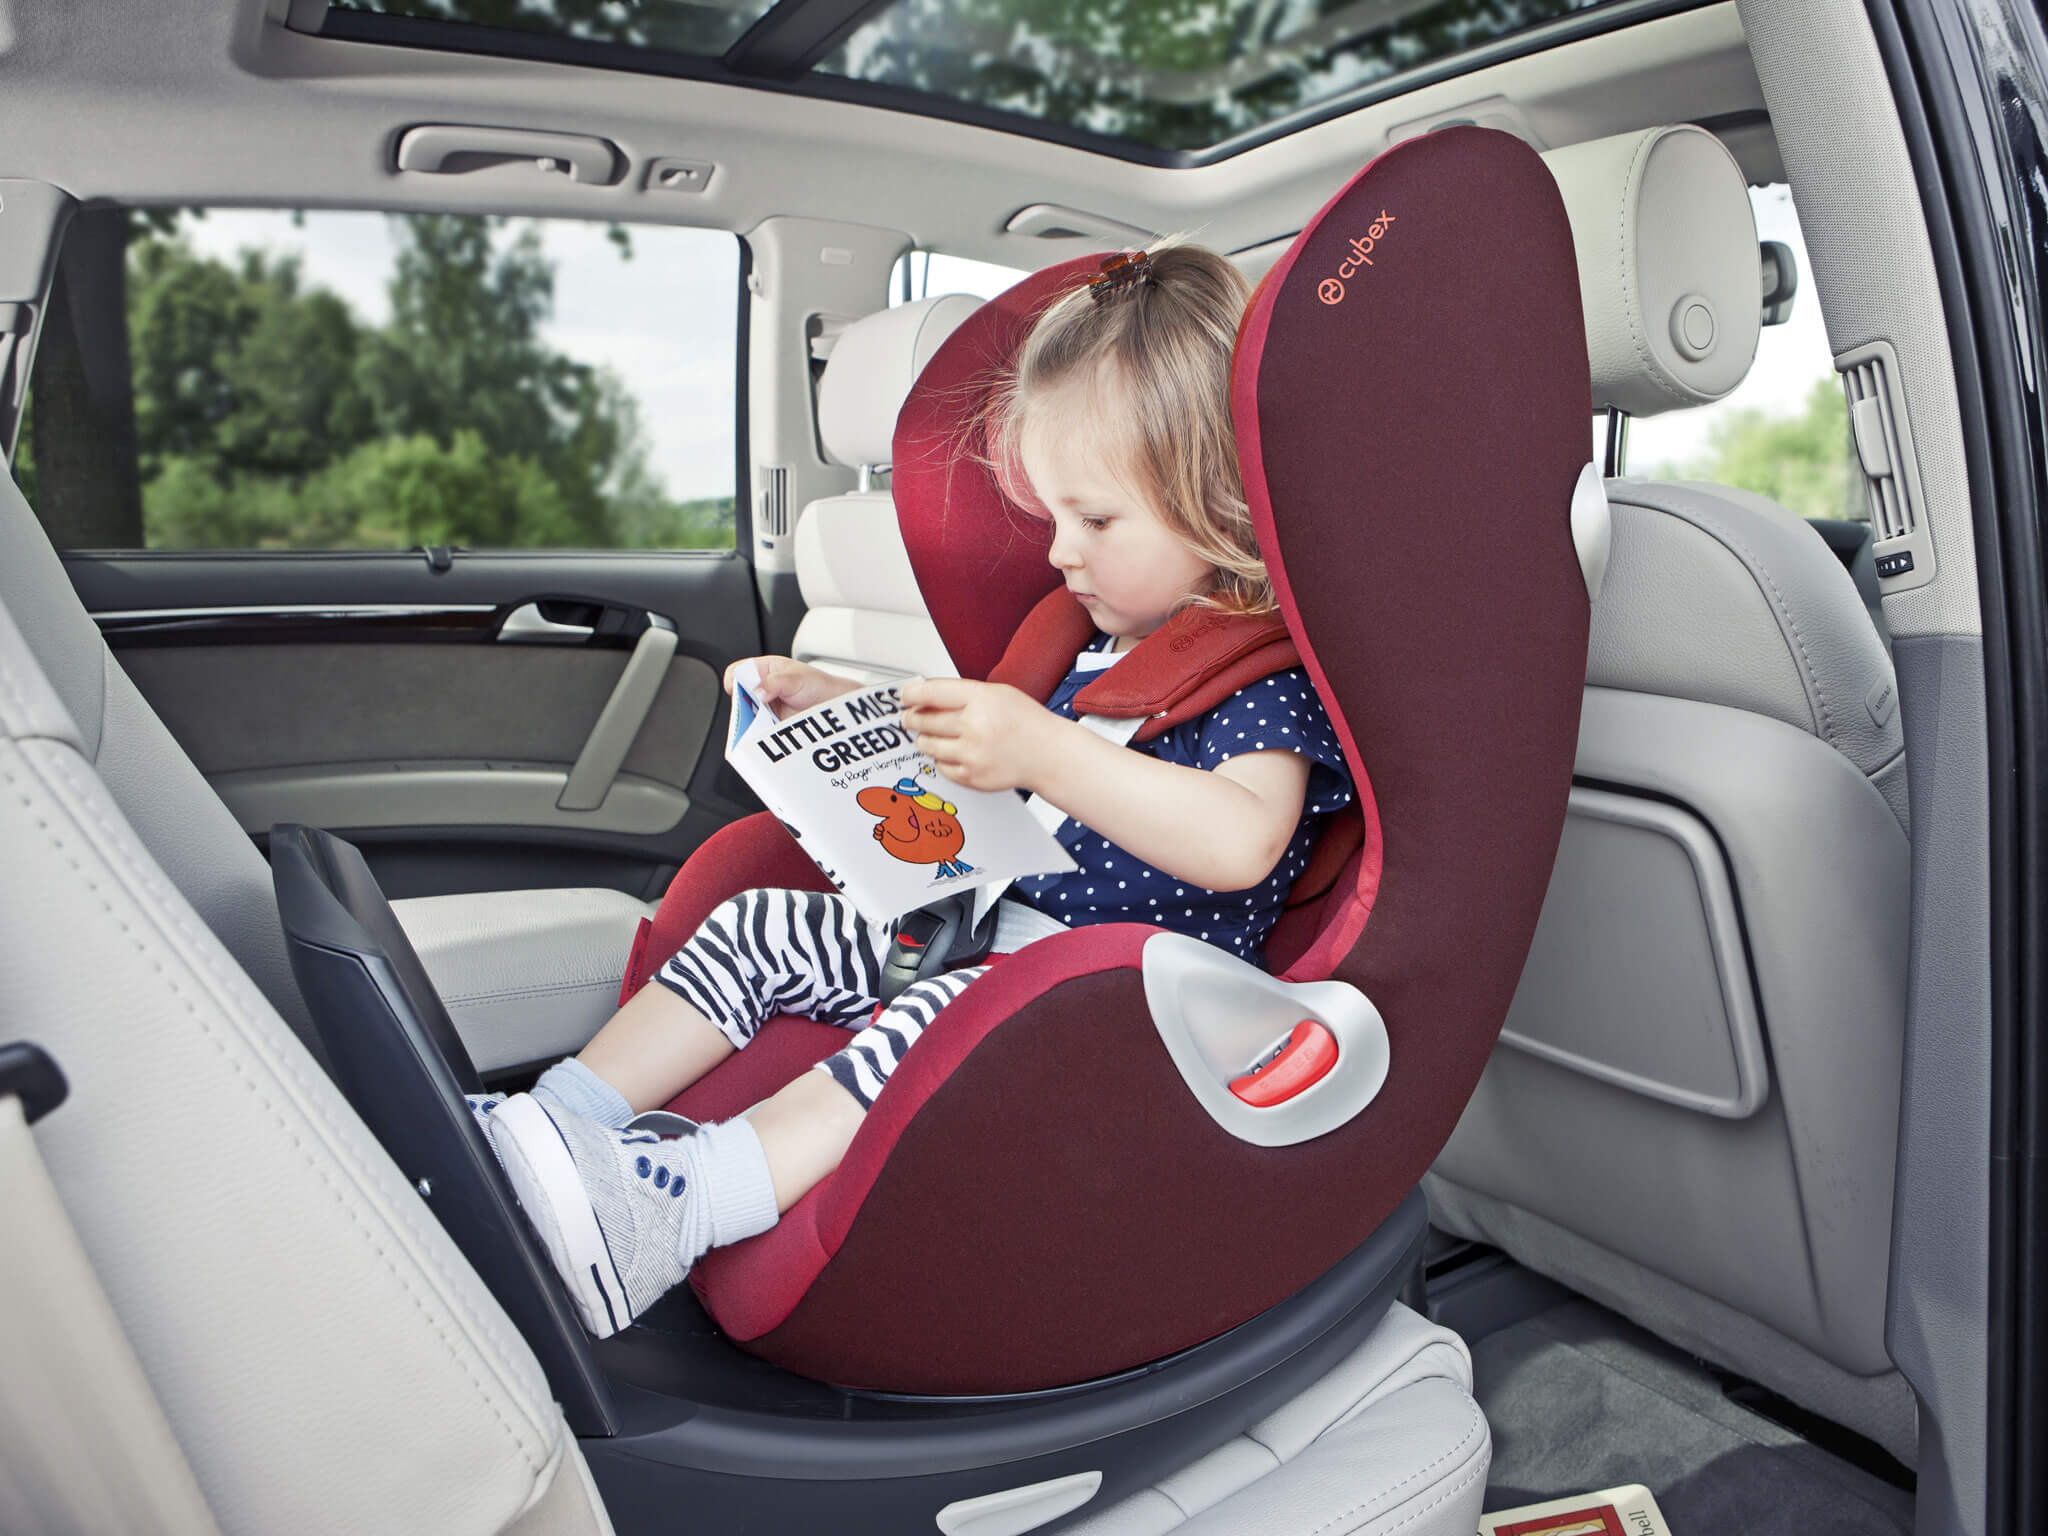 【汽车儿童座椅三问三答:安全是你给出的最好